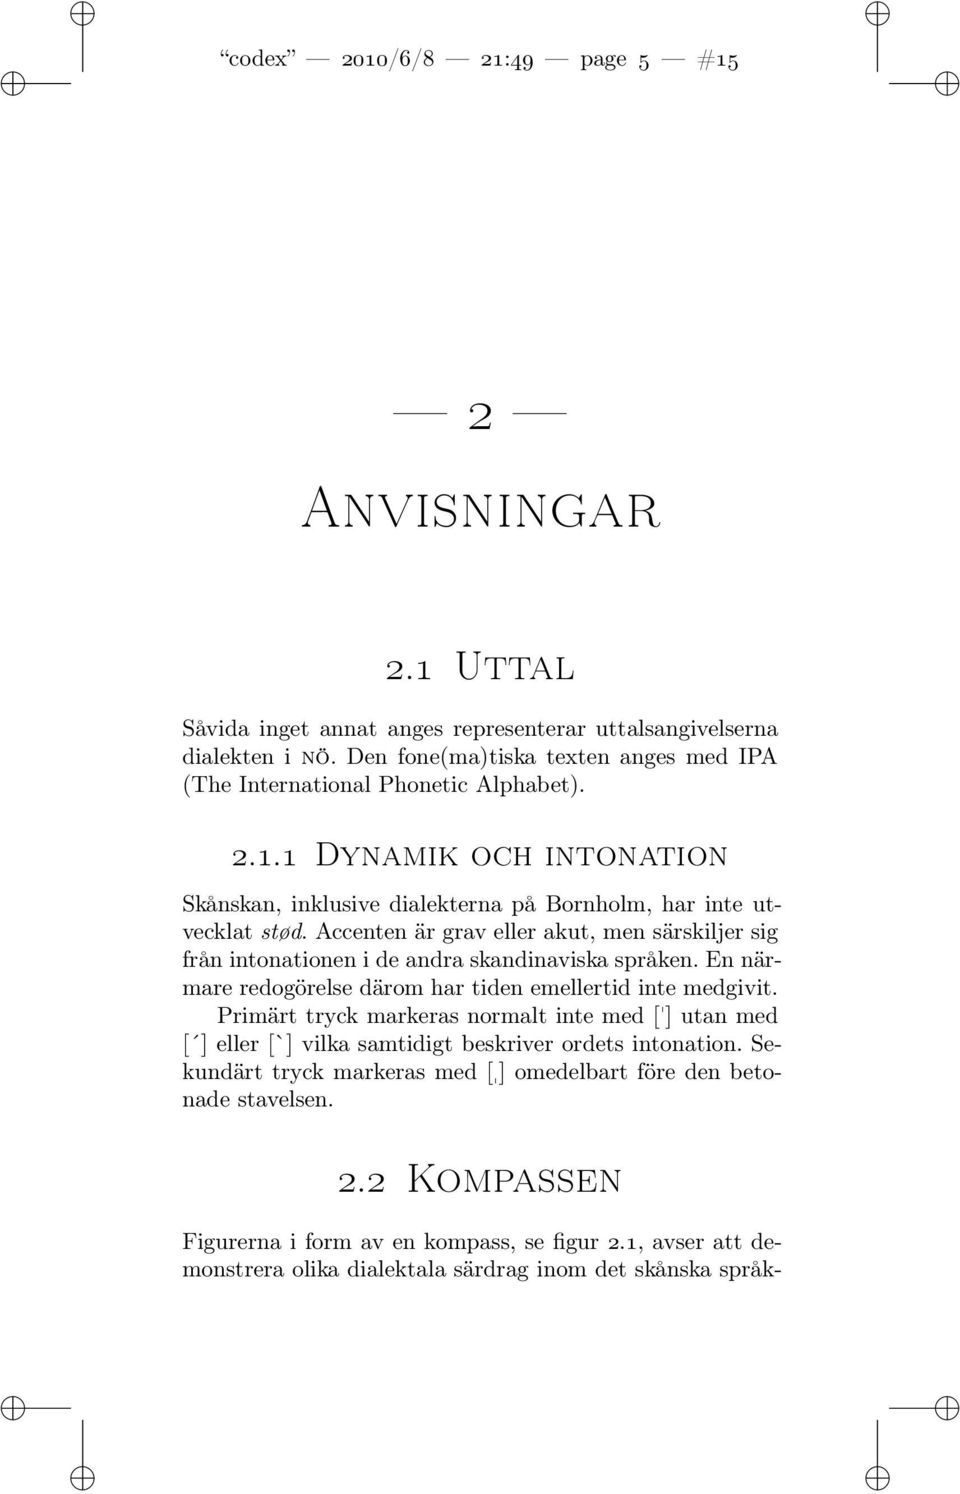 Accenten är grav eller akut, men särskiljer sig från intonationen i de andra skandinaviska språken. En närmare redogörelse därom har tiden emellertid inte medgivit.